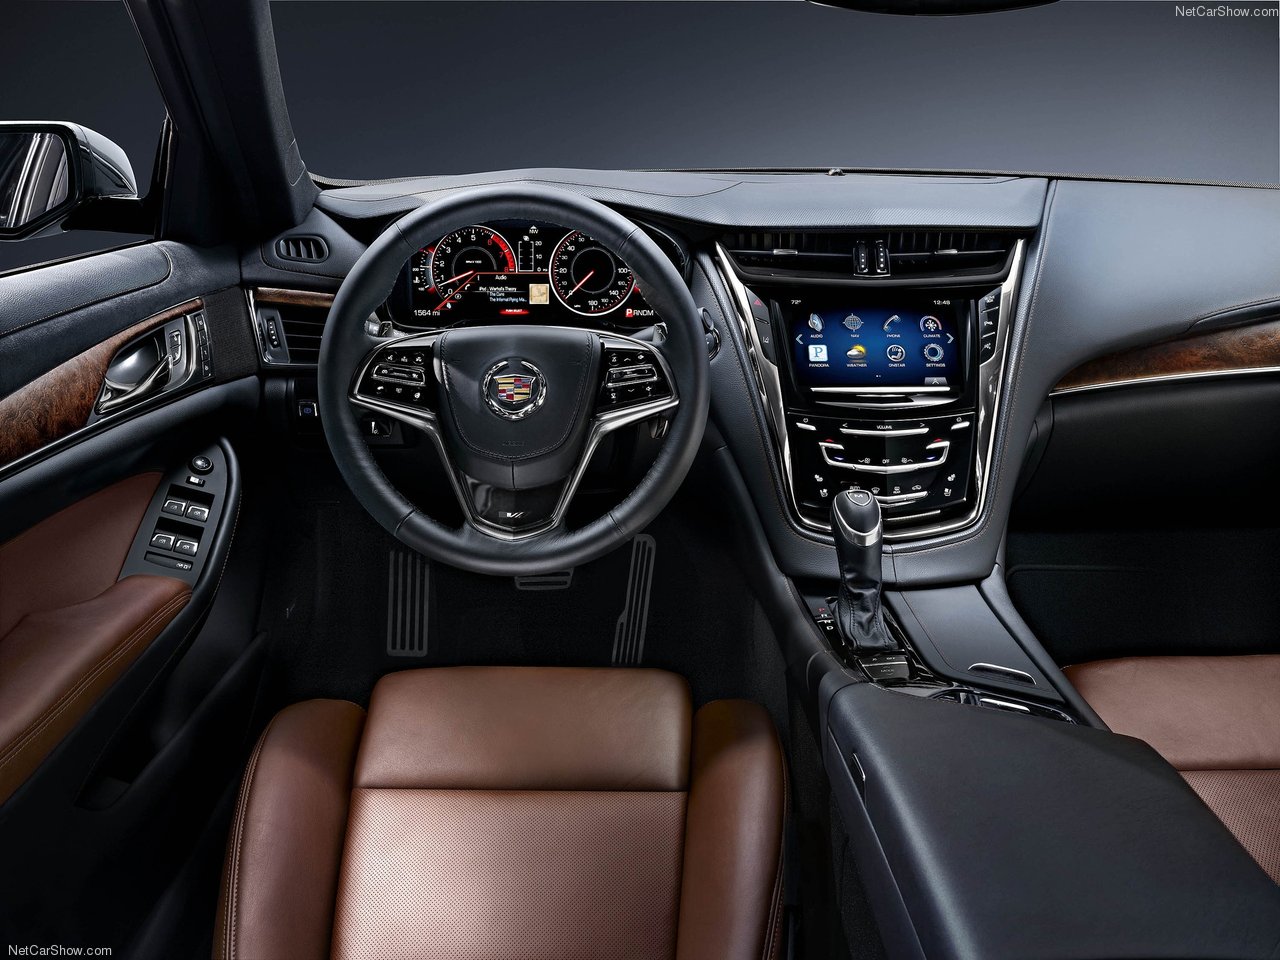 Cadillac CTS 2015: Nâng cấp nhỏ về thiết kế và công nghệ